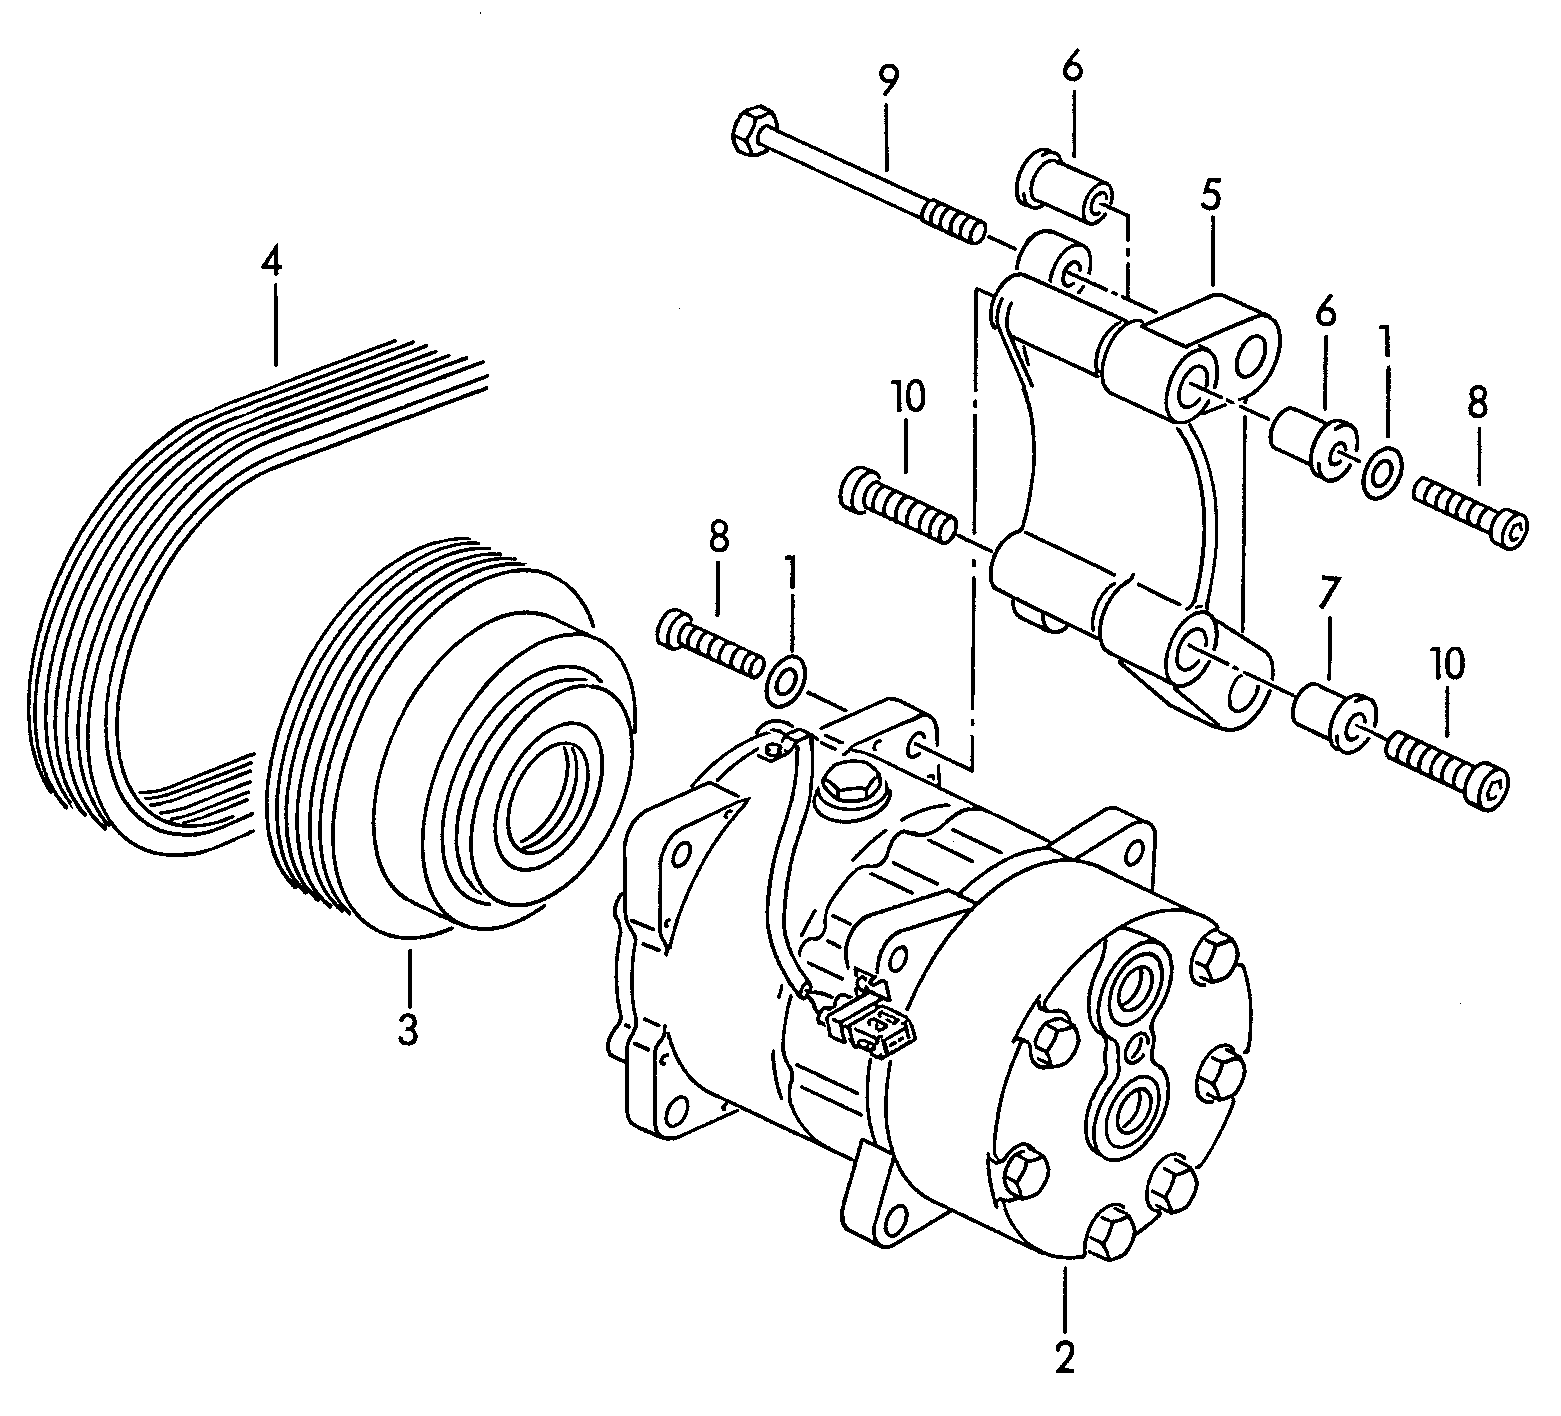 空调压缩机; 压缩机的
连接紧固件 - Transporter(TR)  